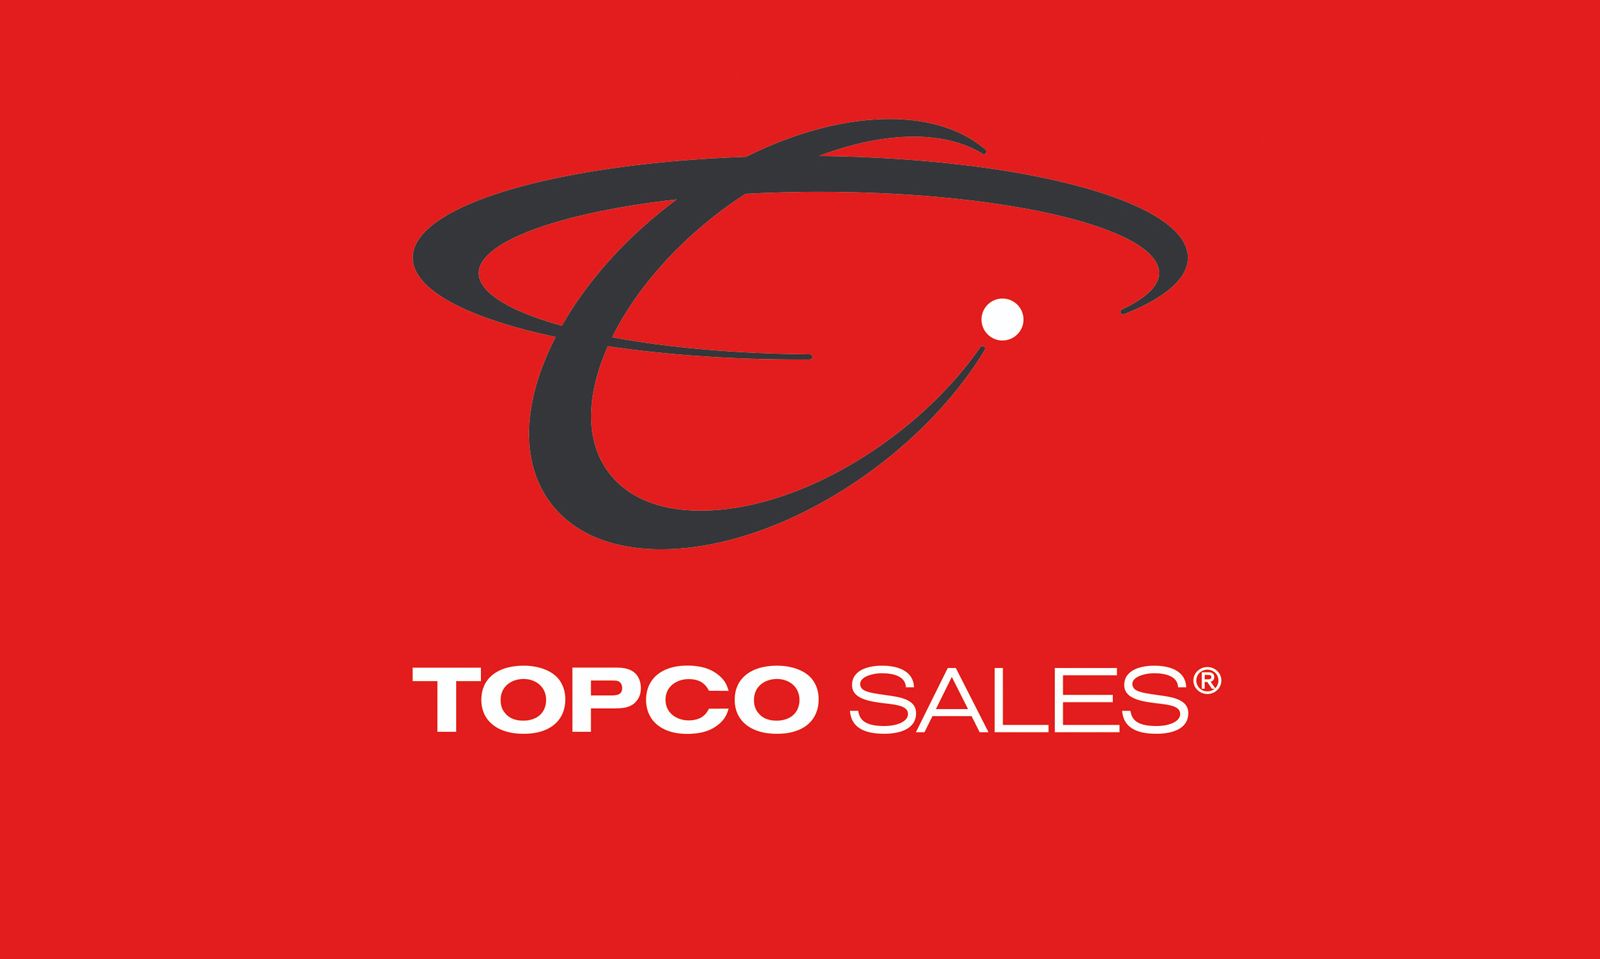 Topco Sales Sponsors April Flores Exhibit